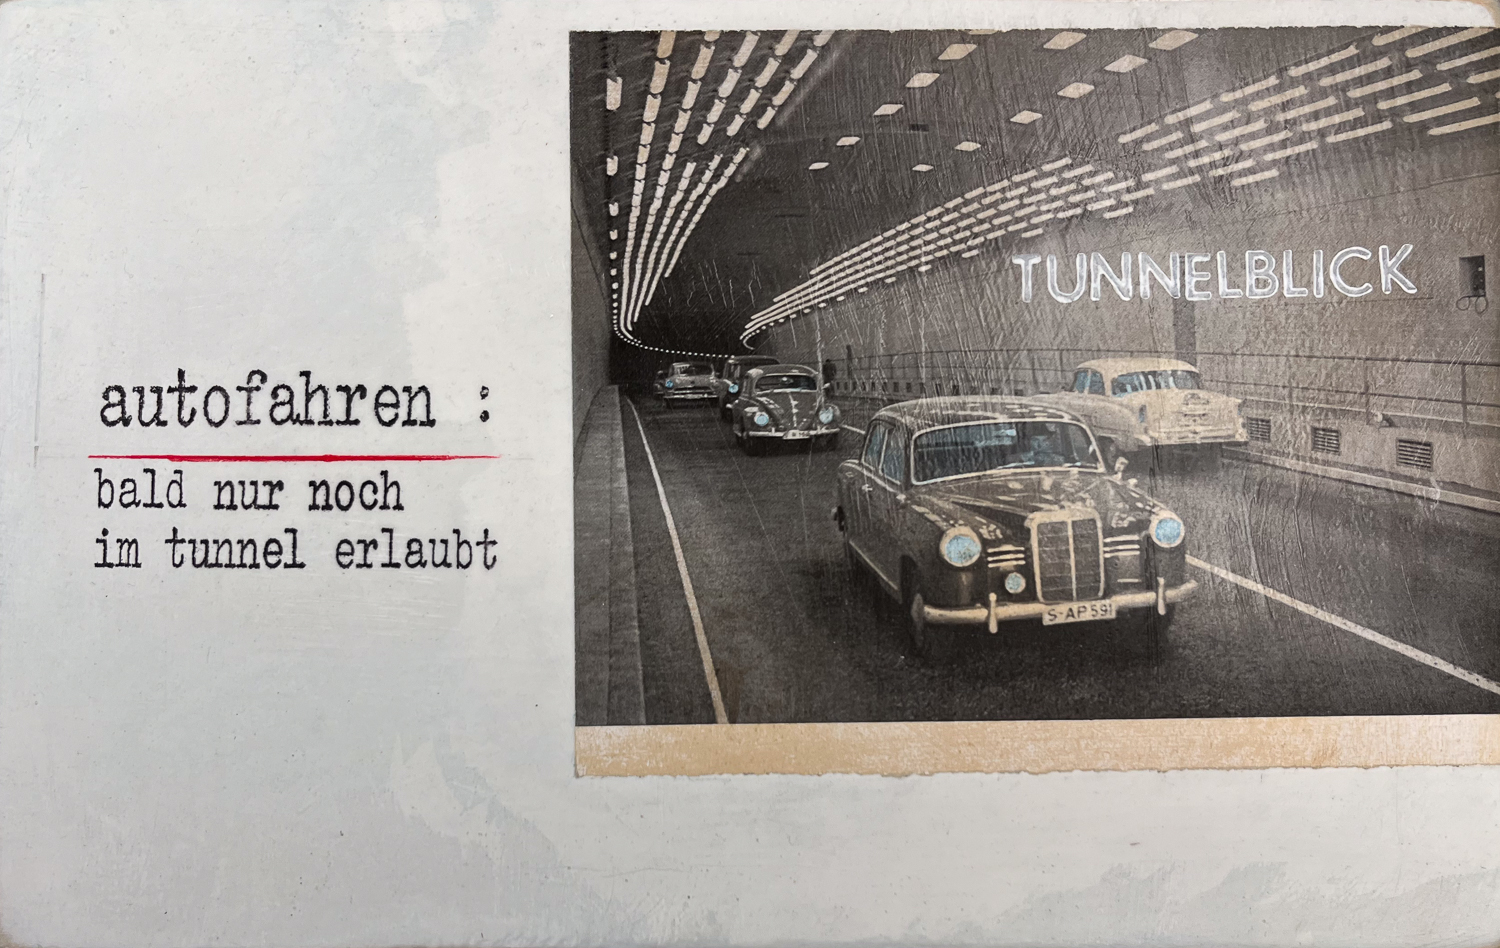 Tunnelblick von Petersen, Oldtimer in Tunnel, Retro und Vintage Fahrzeug Kunst